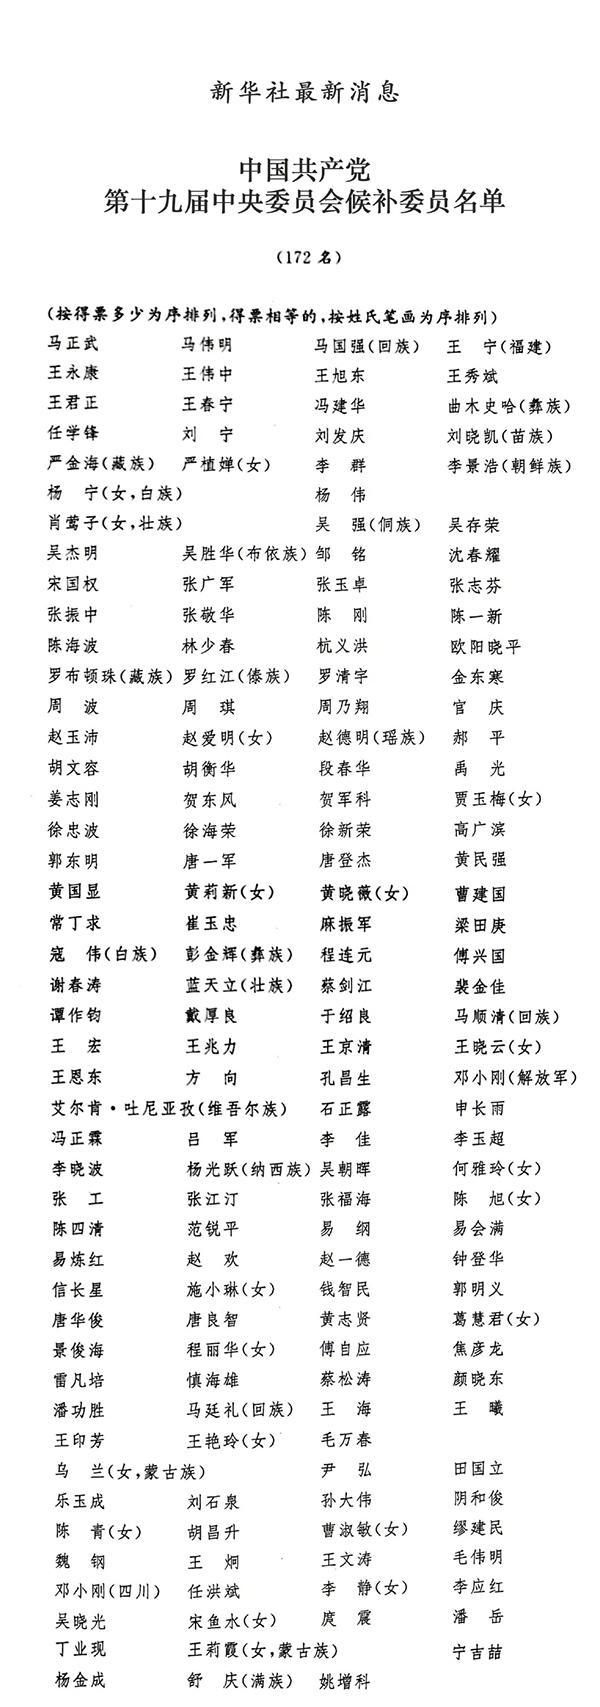 中国共产党第十九届中央委员会候补委员名单|